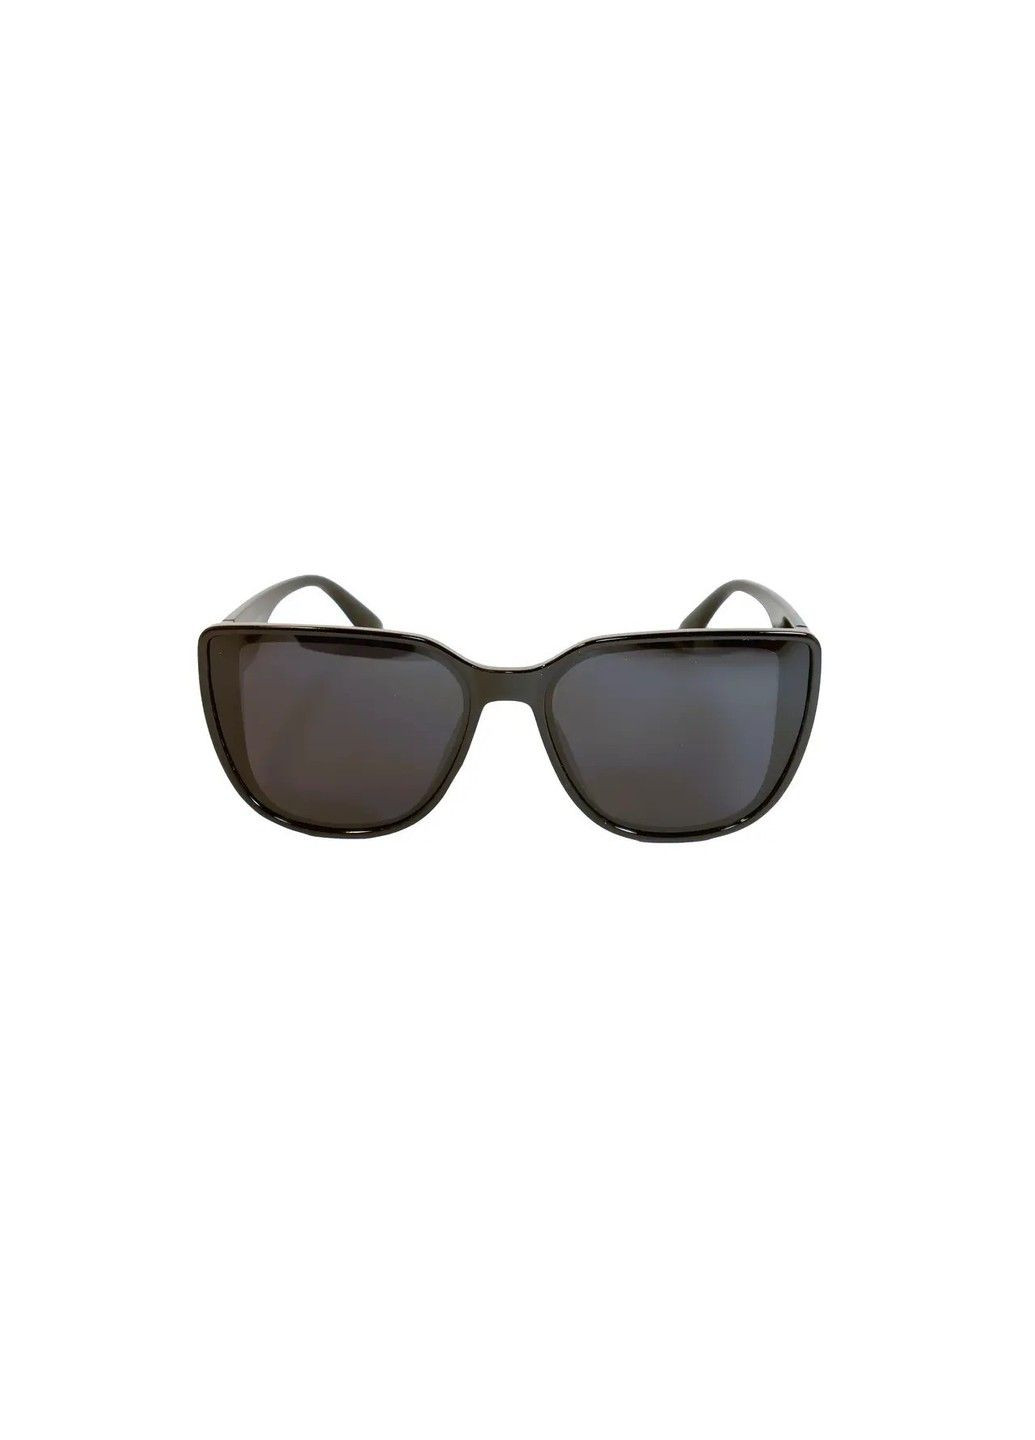 Cолнцезащитные поляризационные женские очки P339-1 Polarized (294607643)